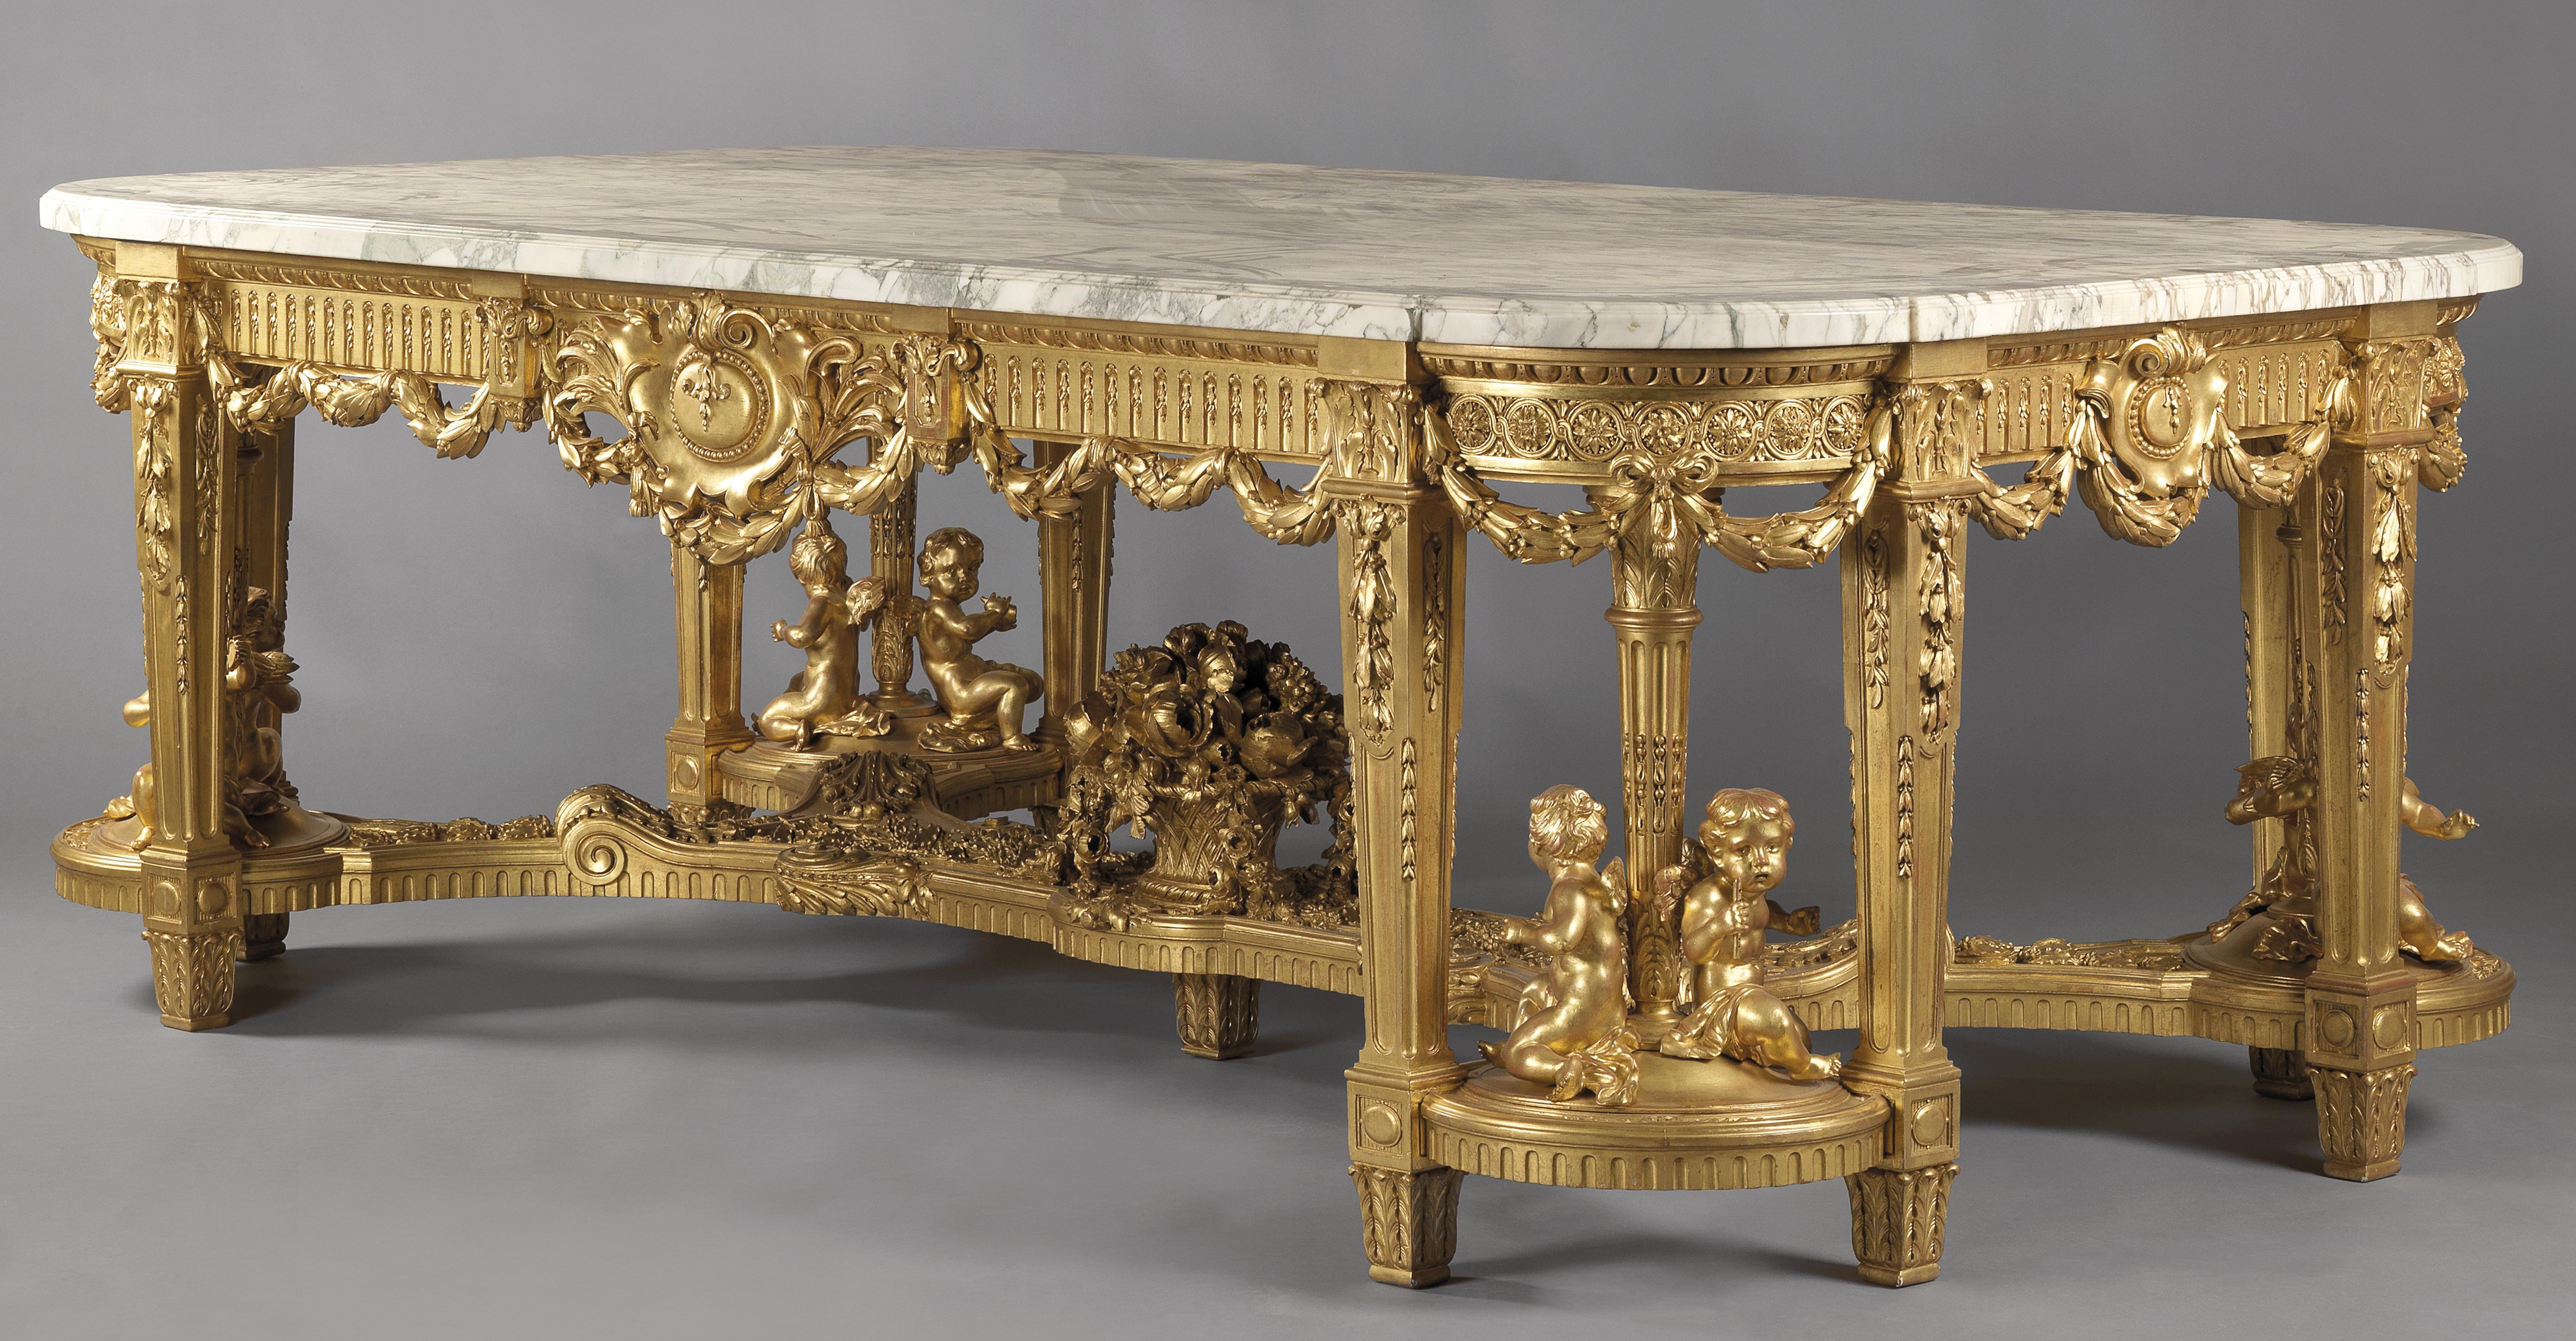 Une table centrale monumentale unique de style Louis XVI en bois doré avec un plateau en marbre Brèche Violette par François Linke.

Français, vers 1914.

Les meubles en bois doré de Linke ne sont pas seulement rares, ils peuvent aussi être